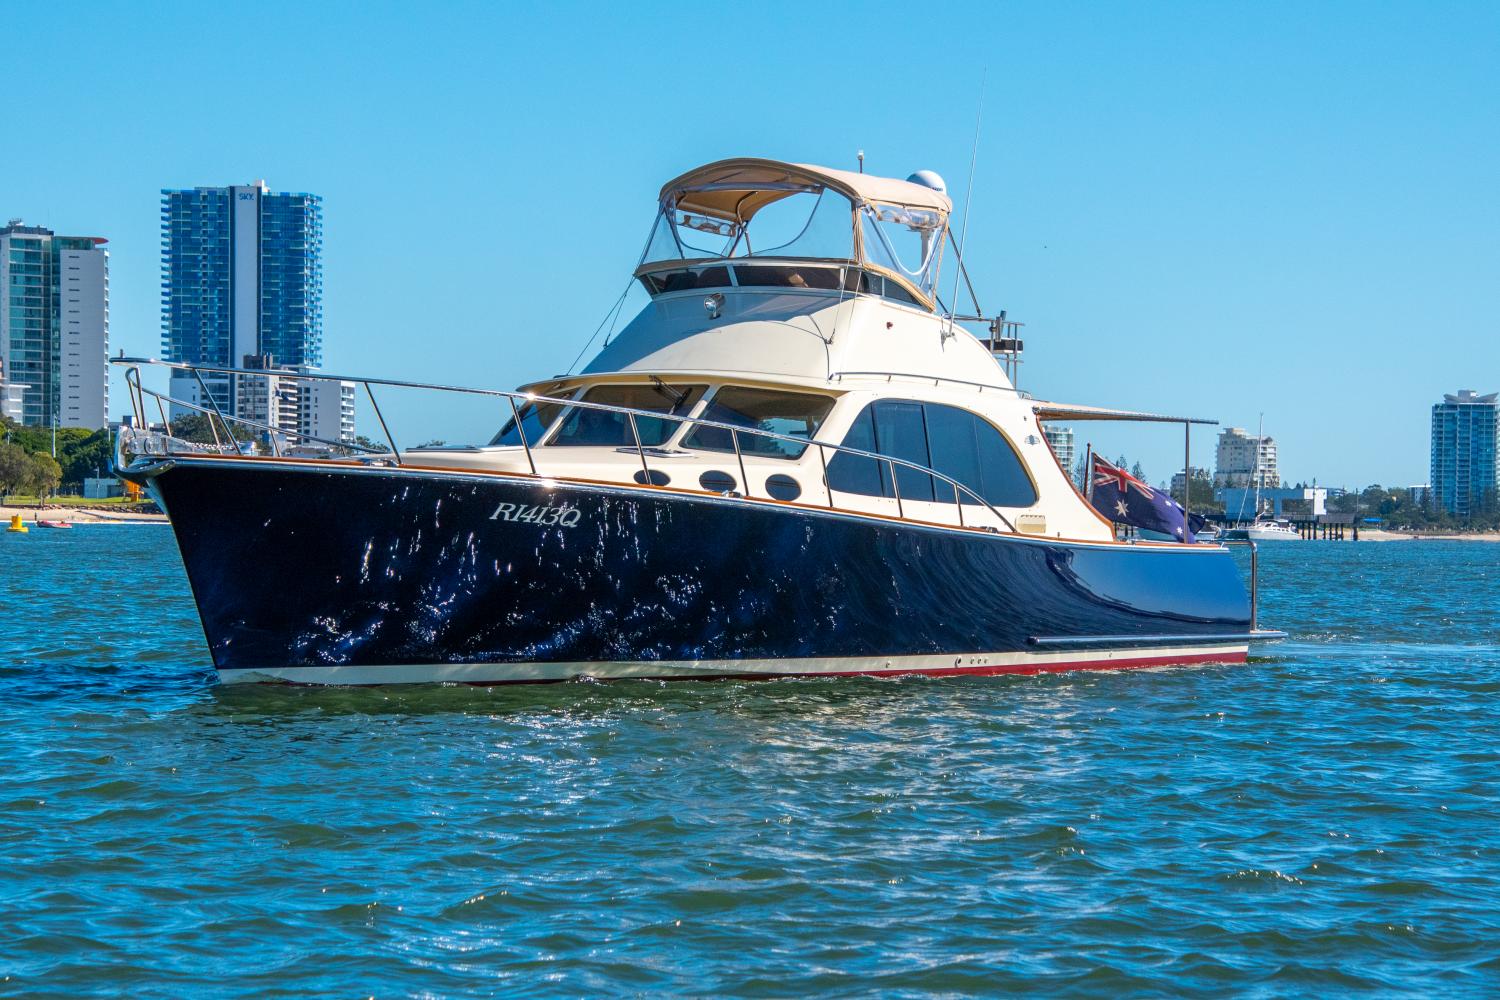 palm beach motor yacht for sale australia